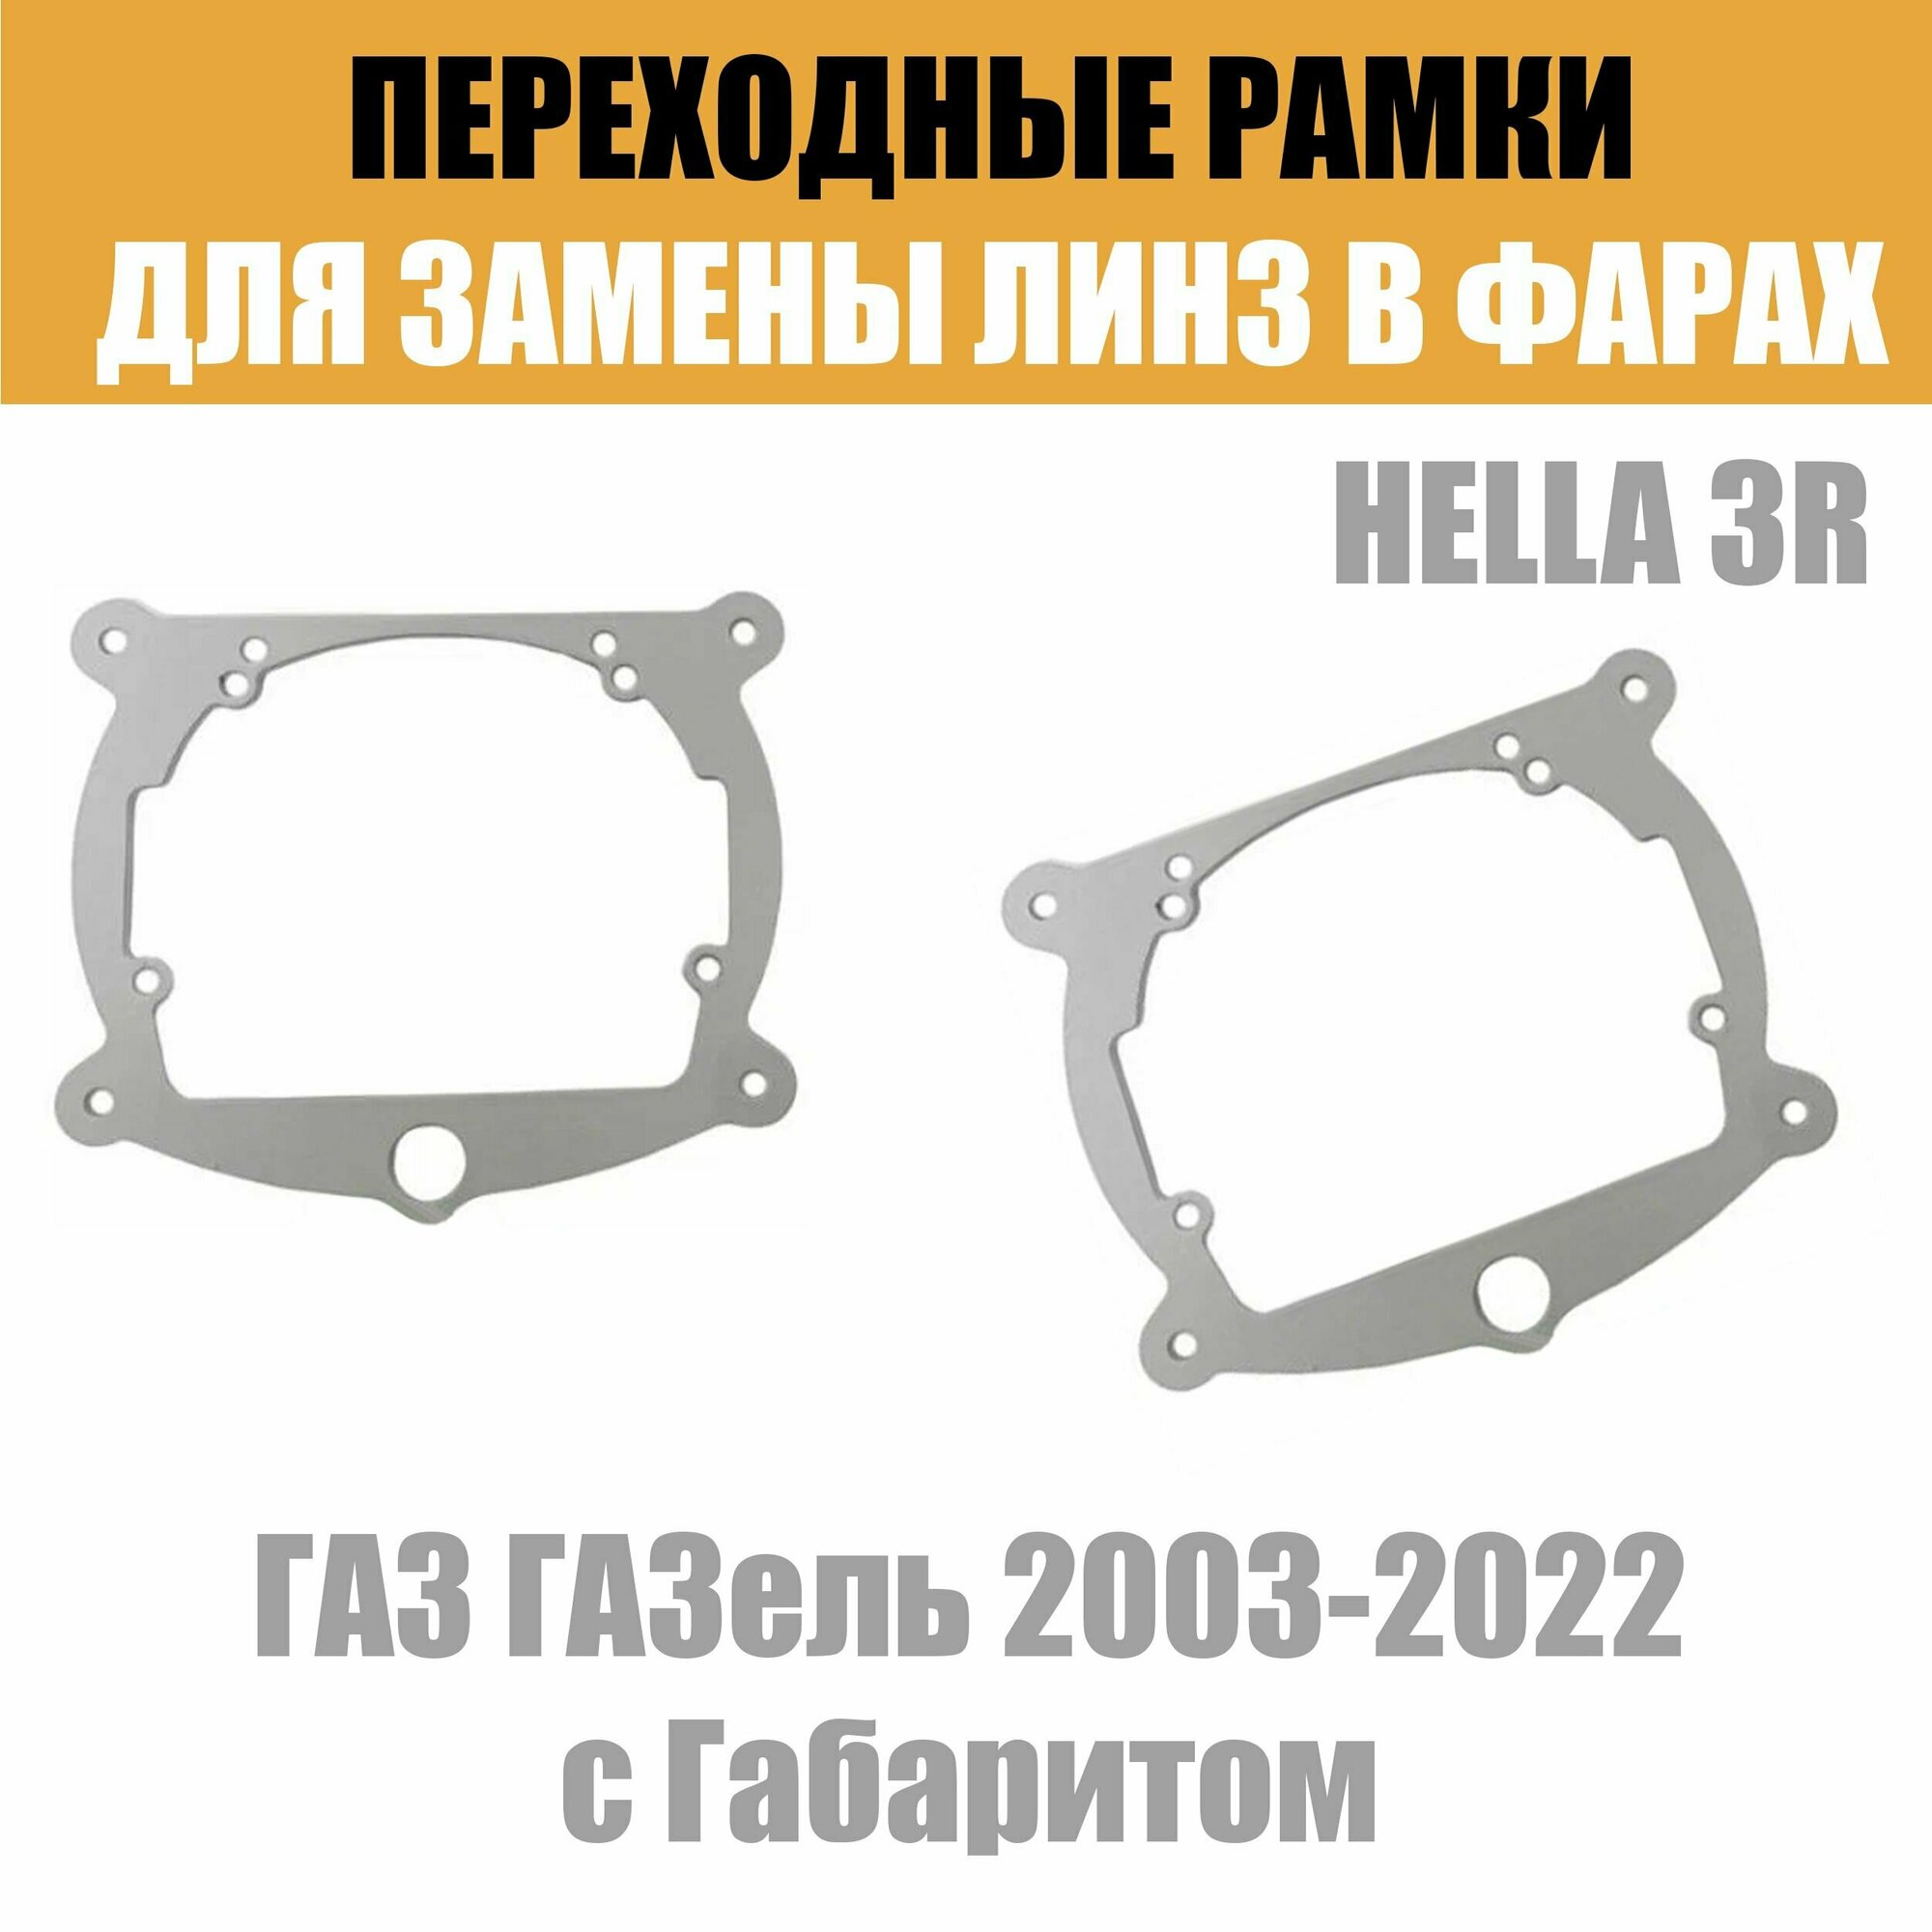 Переходные рамки для линз №8 на ГАЗ ГАЗель DAF Renault с Габаритом под модуль Hella 3R/Hella 3 (Комплект 2)